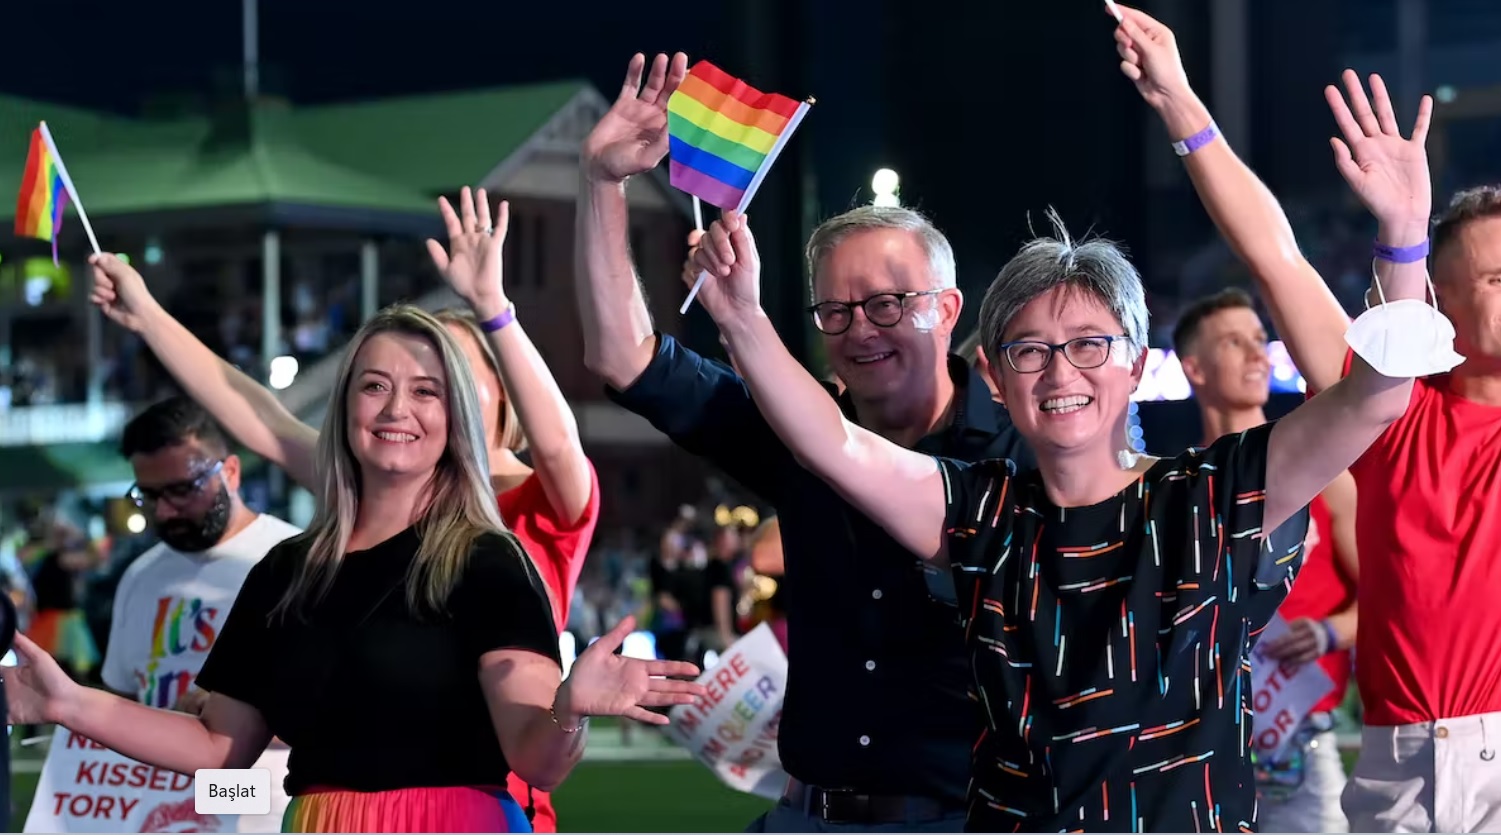 Avustralya, dini okullardaki LGBTİ+ ayrımcılığının önüne geçmek istiyor Kaos GL - LGBTİ+ Haber Portalı